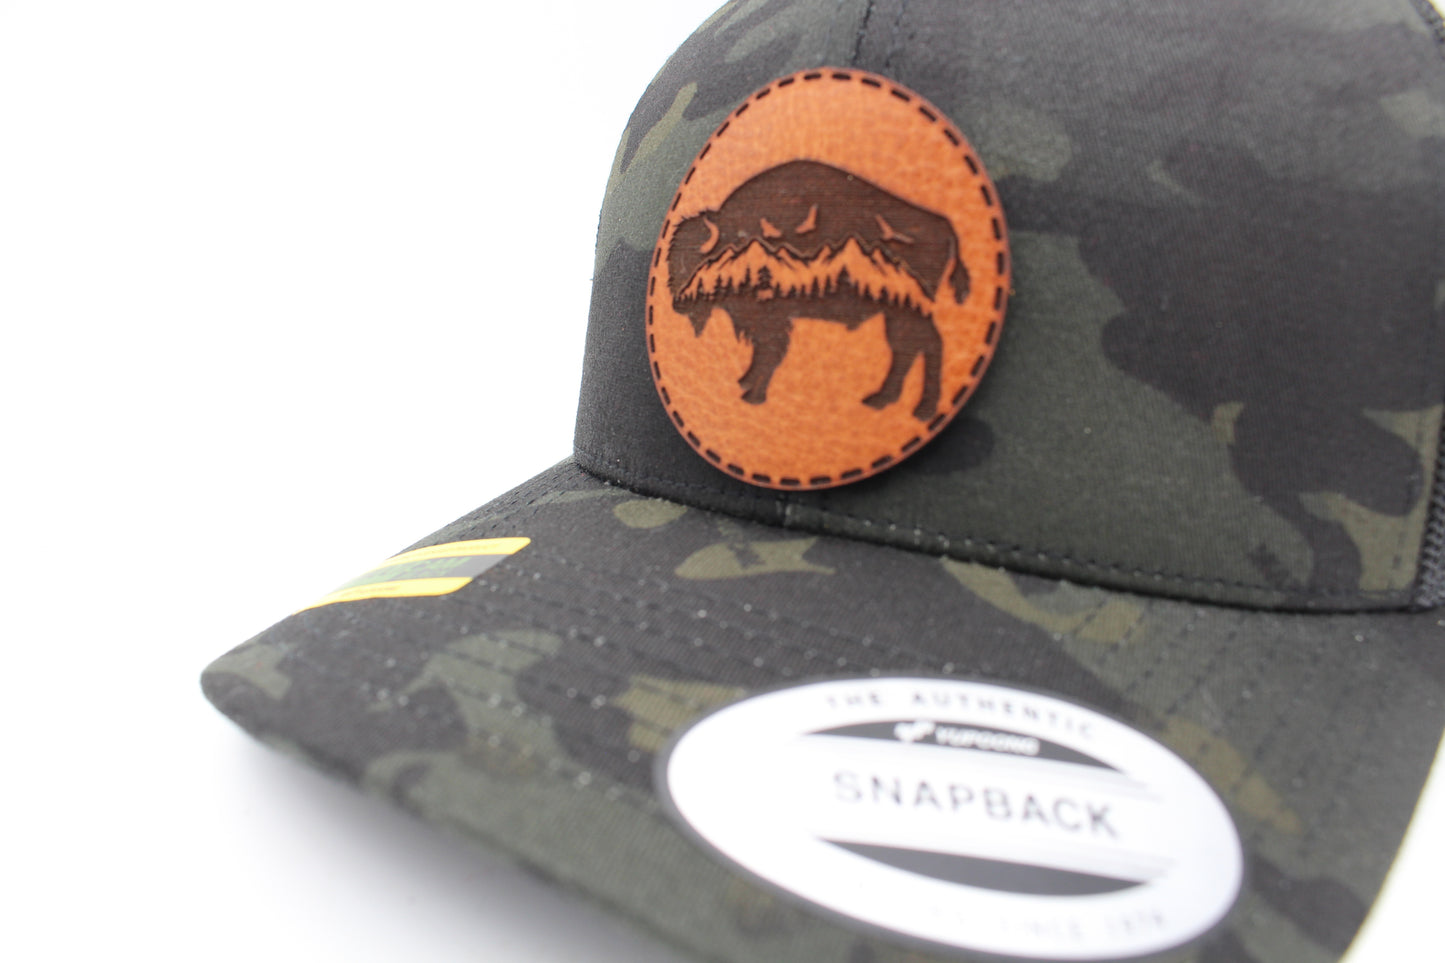 Bison Hat | Outdoors Trucker Hat | Nature Art Trucker Hat